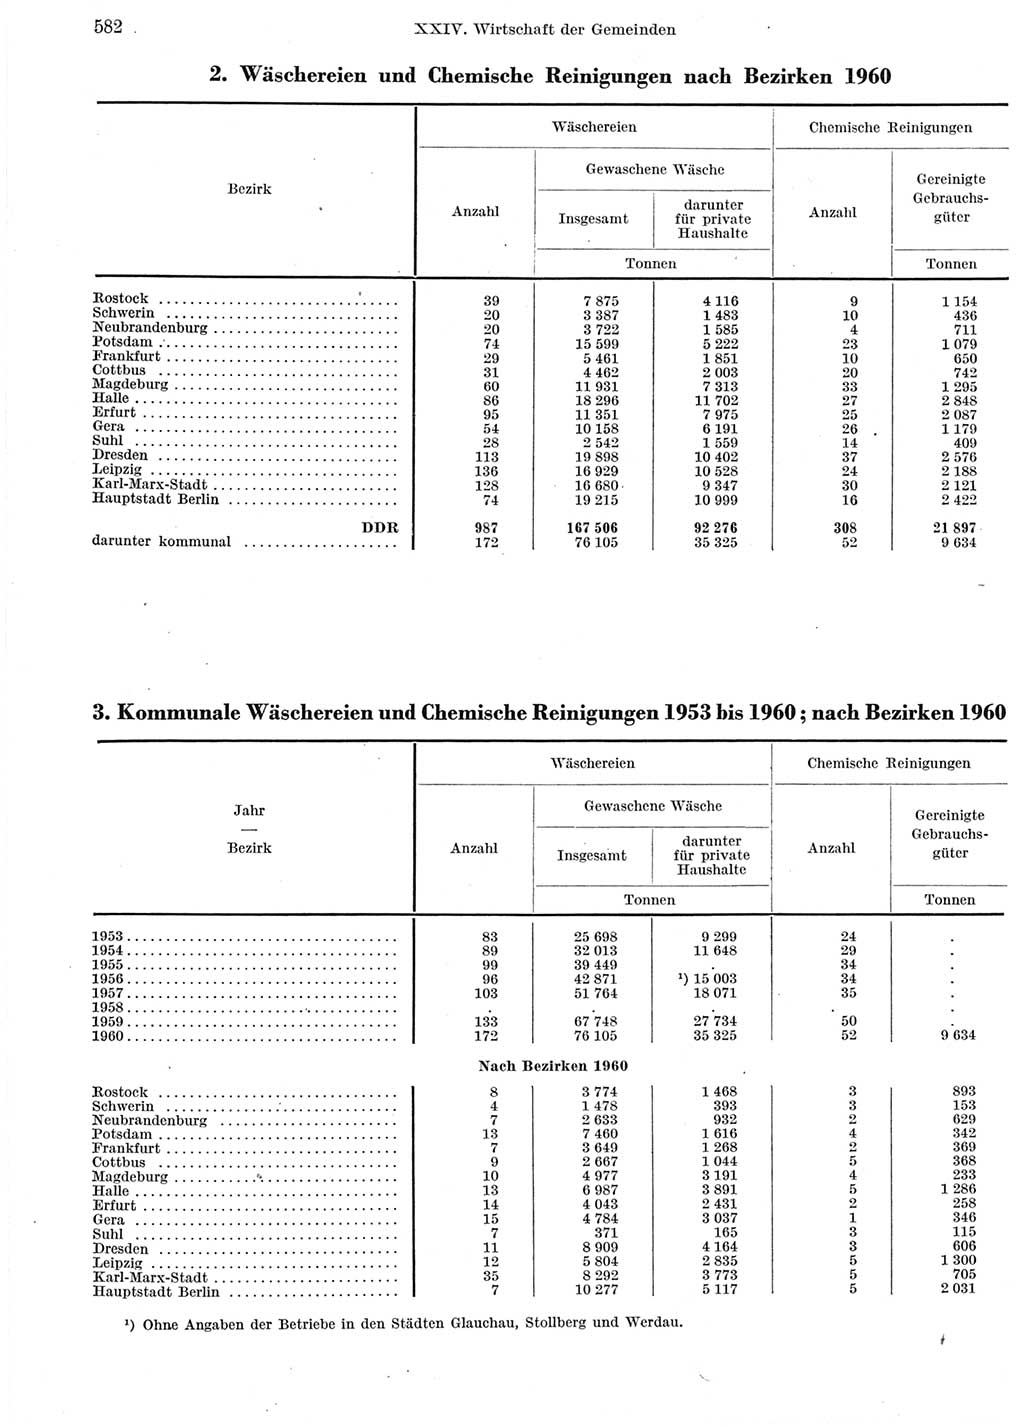 Statistisches Jahrbuch der Deutschen Demokratischen Republik (DDR) 1960-1961, Seite 582 (Stat. Jb. DDR 1960-1961, S. 582)